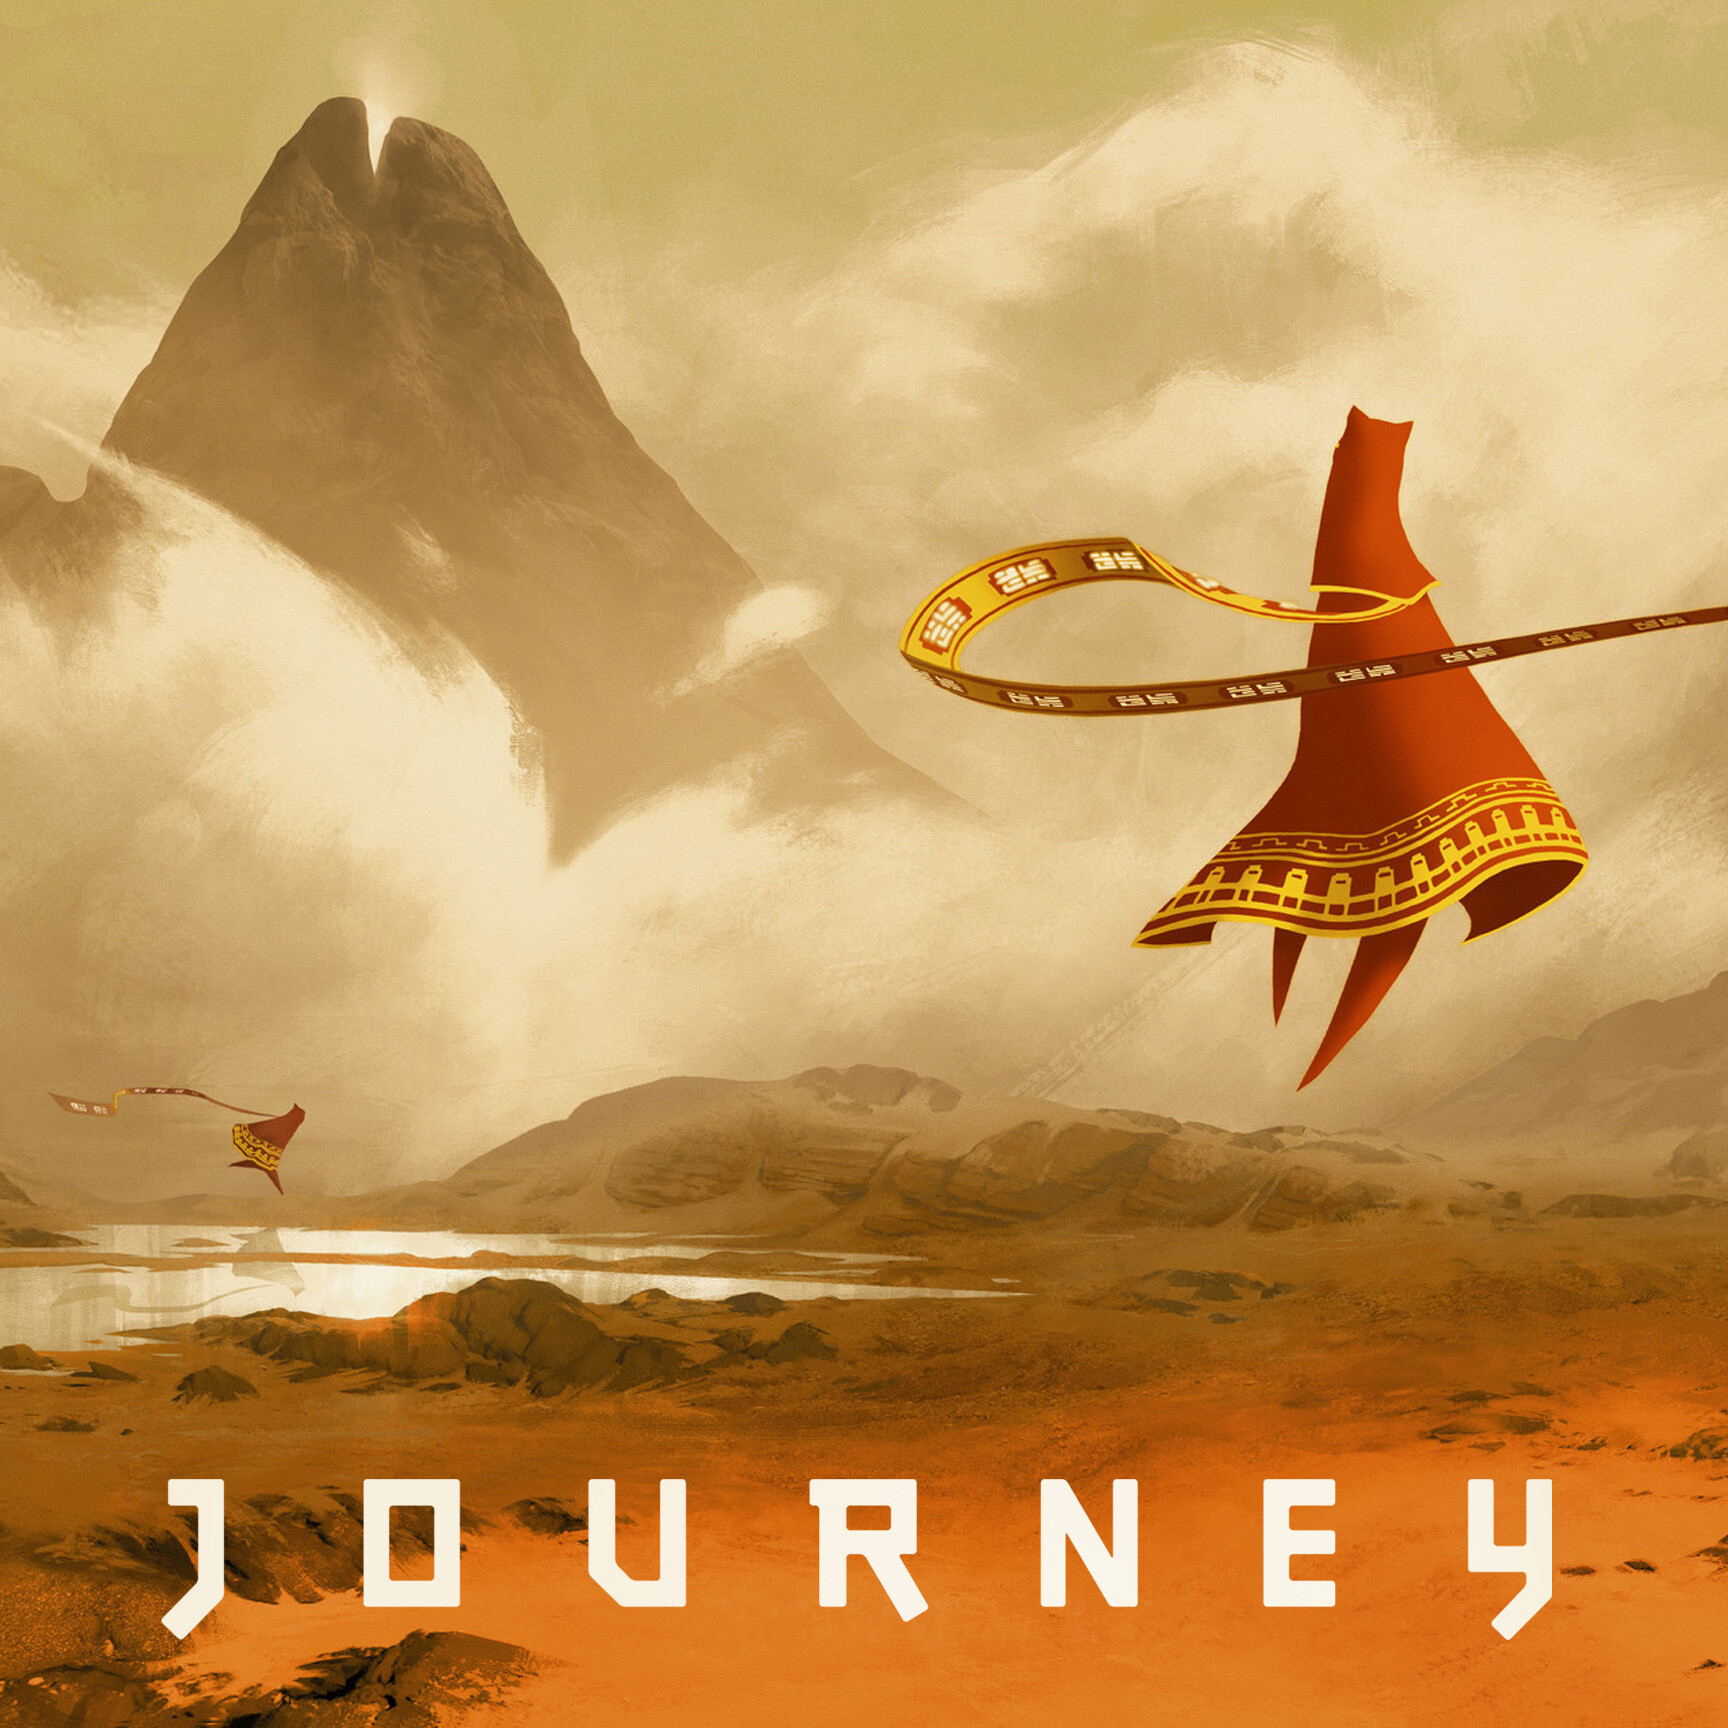 Mid journey картинки. Journey (игра, 2012). Journey thatgamecompany. Путешествие игра Journey. Джорни путешествие игра.